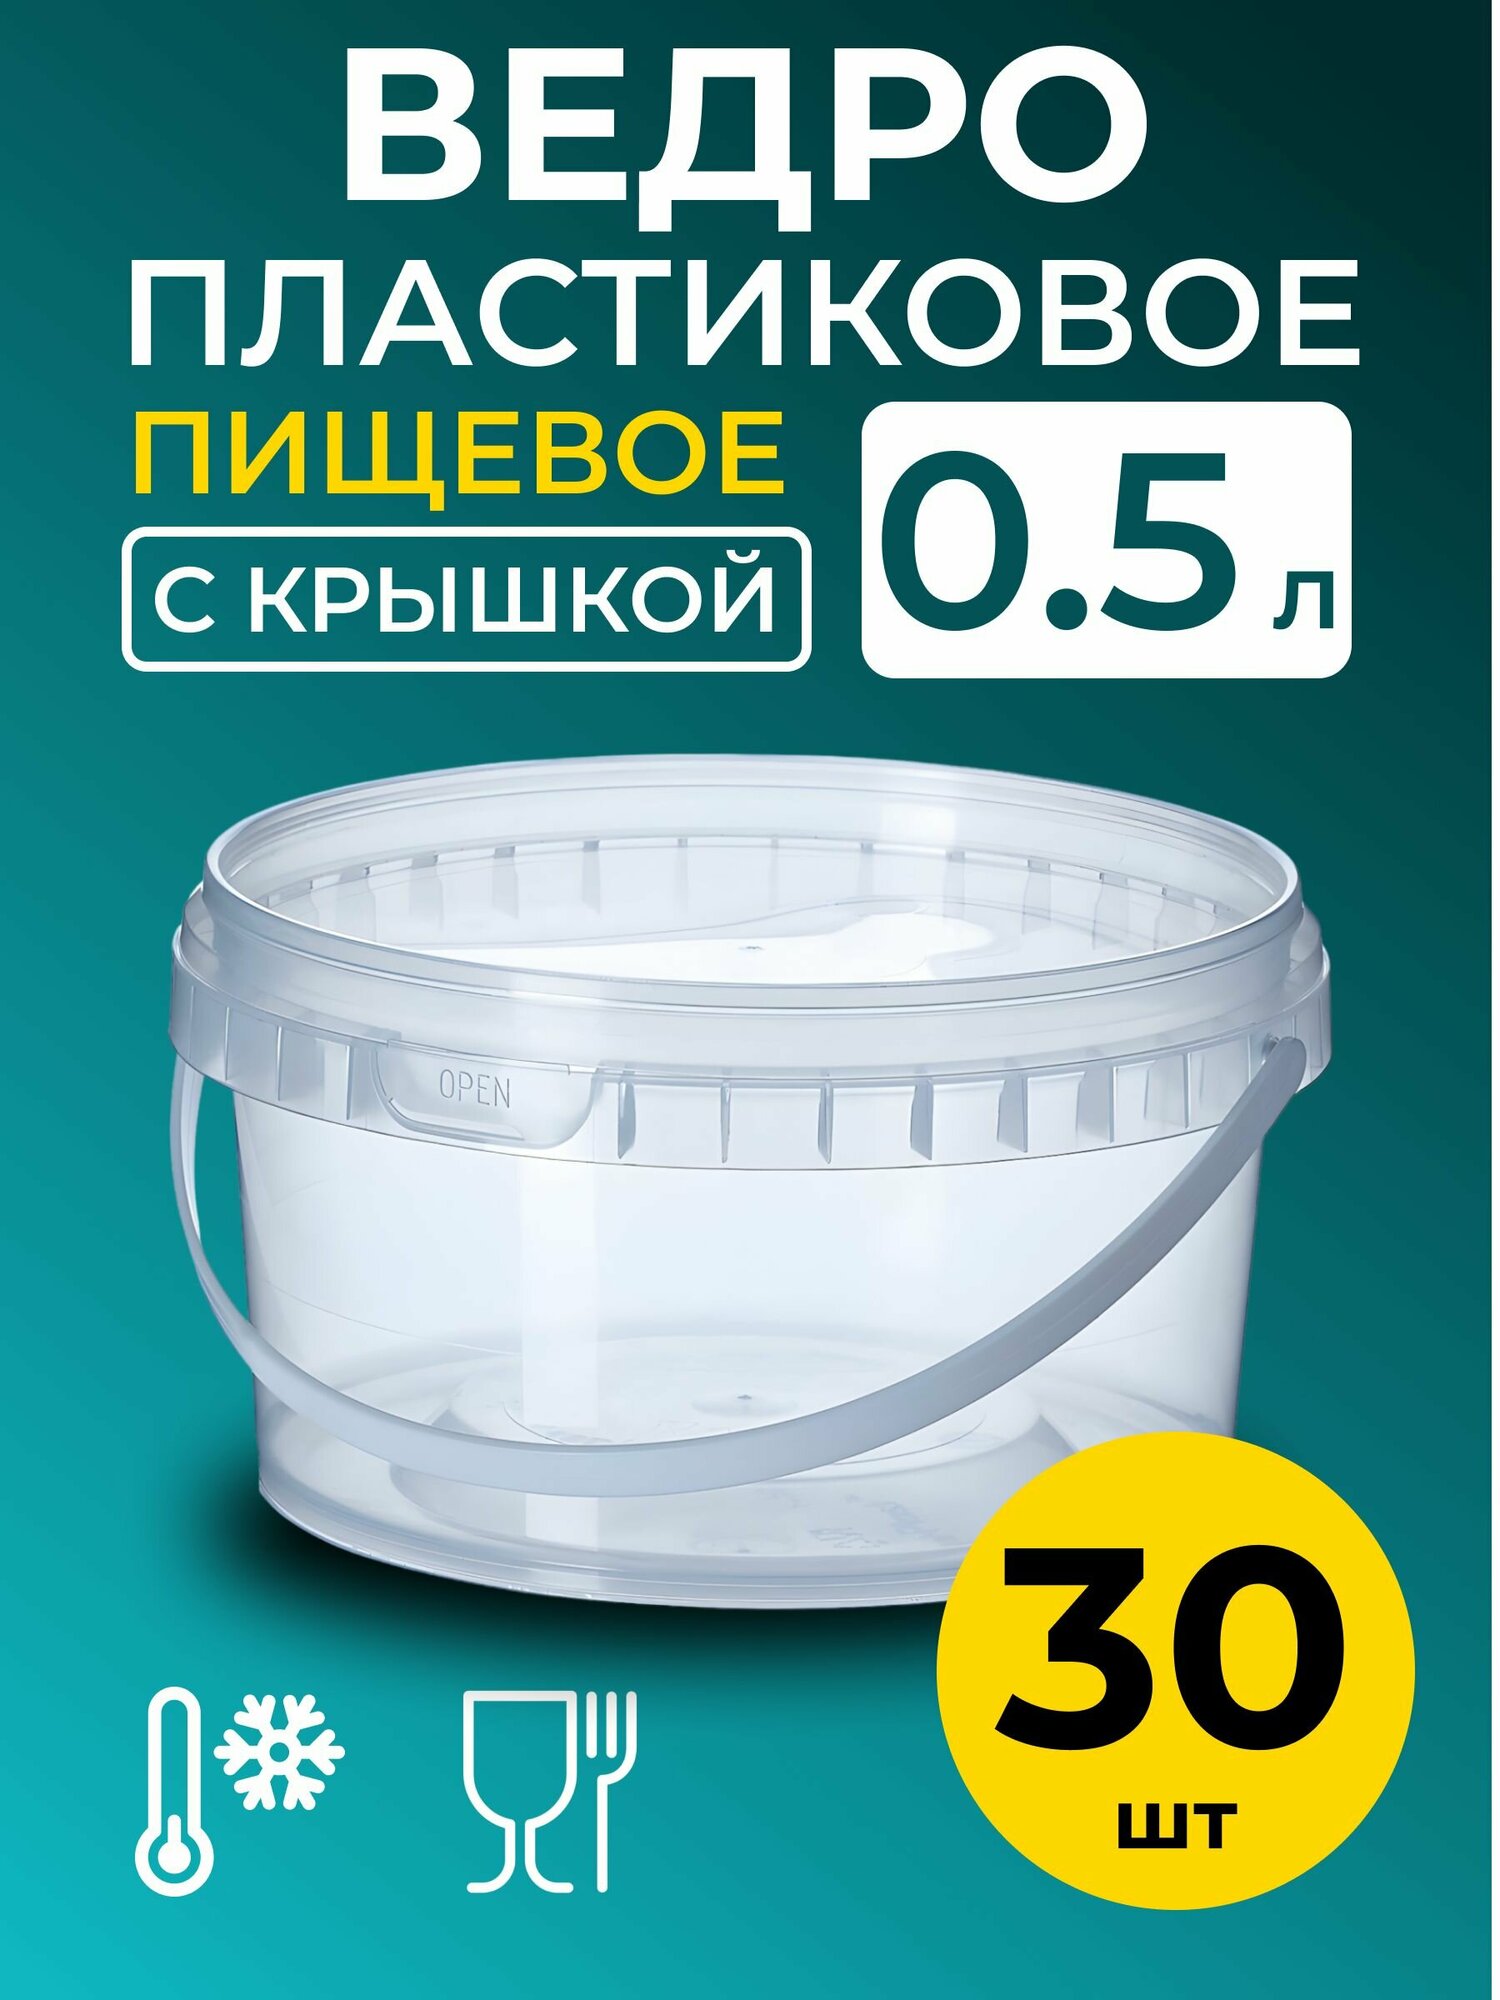 Ведро пластиковое пищевое с крышкой 0.5л (прозрачное), 30 шт.